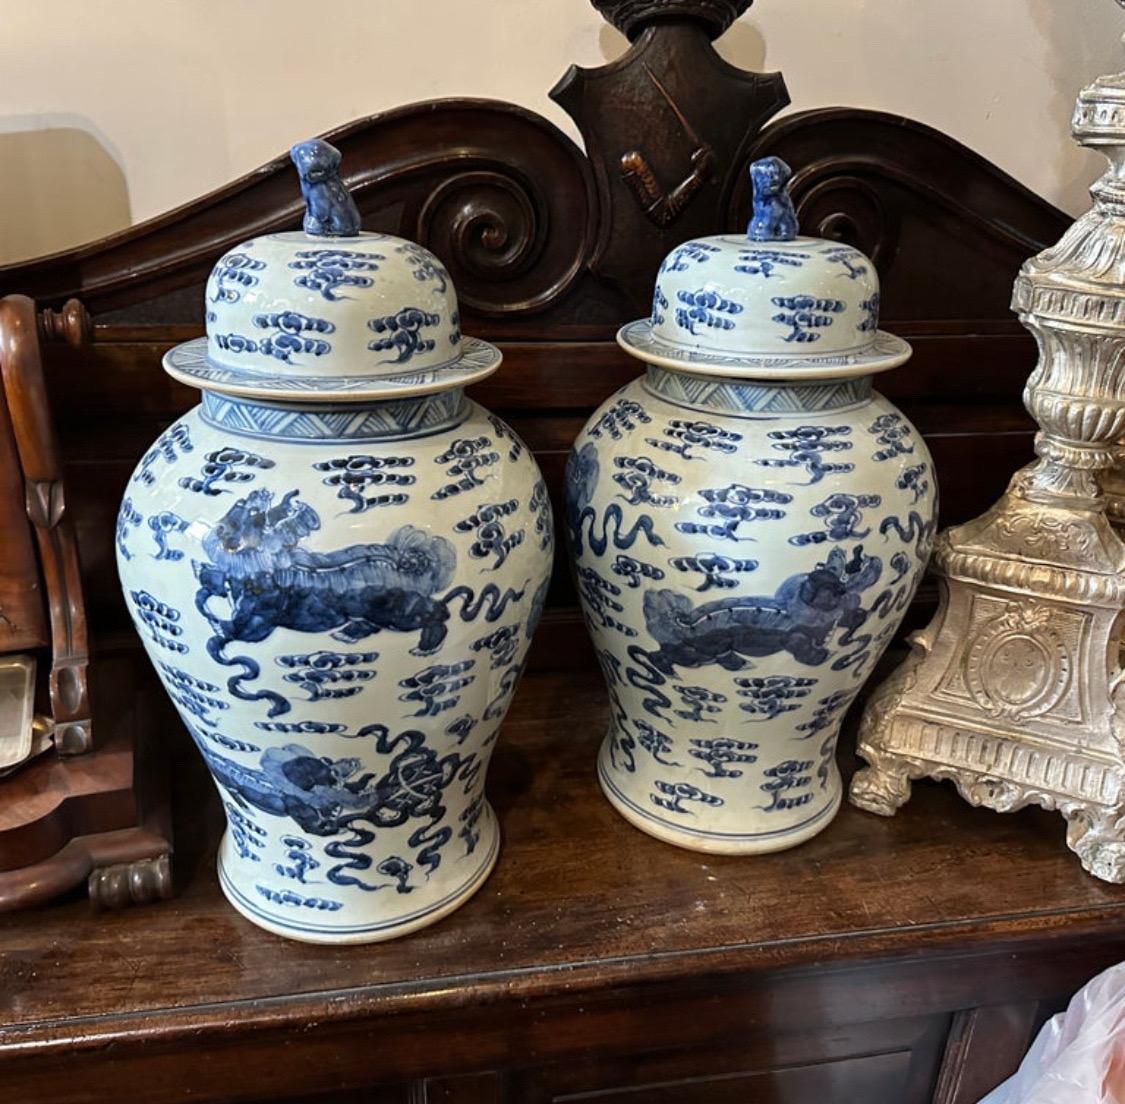 Diese Mitte des 20. Jahrhunderts in China gefertigten Ingwerdosen sind ein Beispiel für den klassischen blau-weißen Keramikstil, der seit Jahrhunderten geschätzt wird. Die Gläser sind aus hochwertigen keramischen Materialien hergestellt, die für